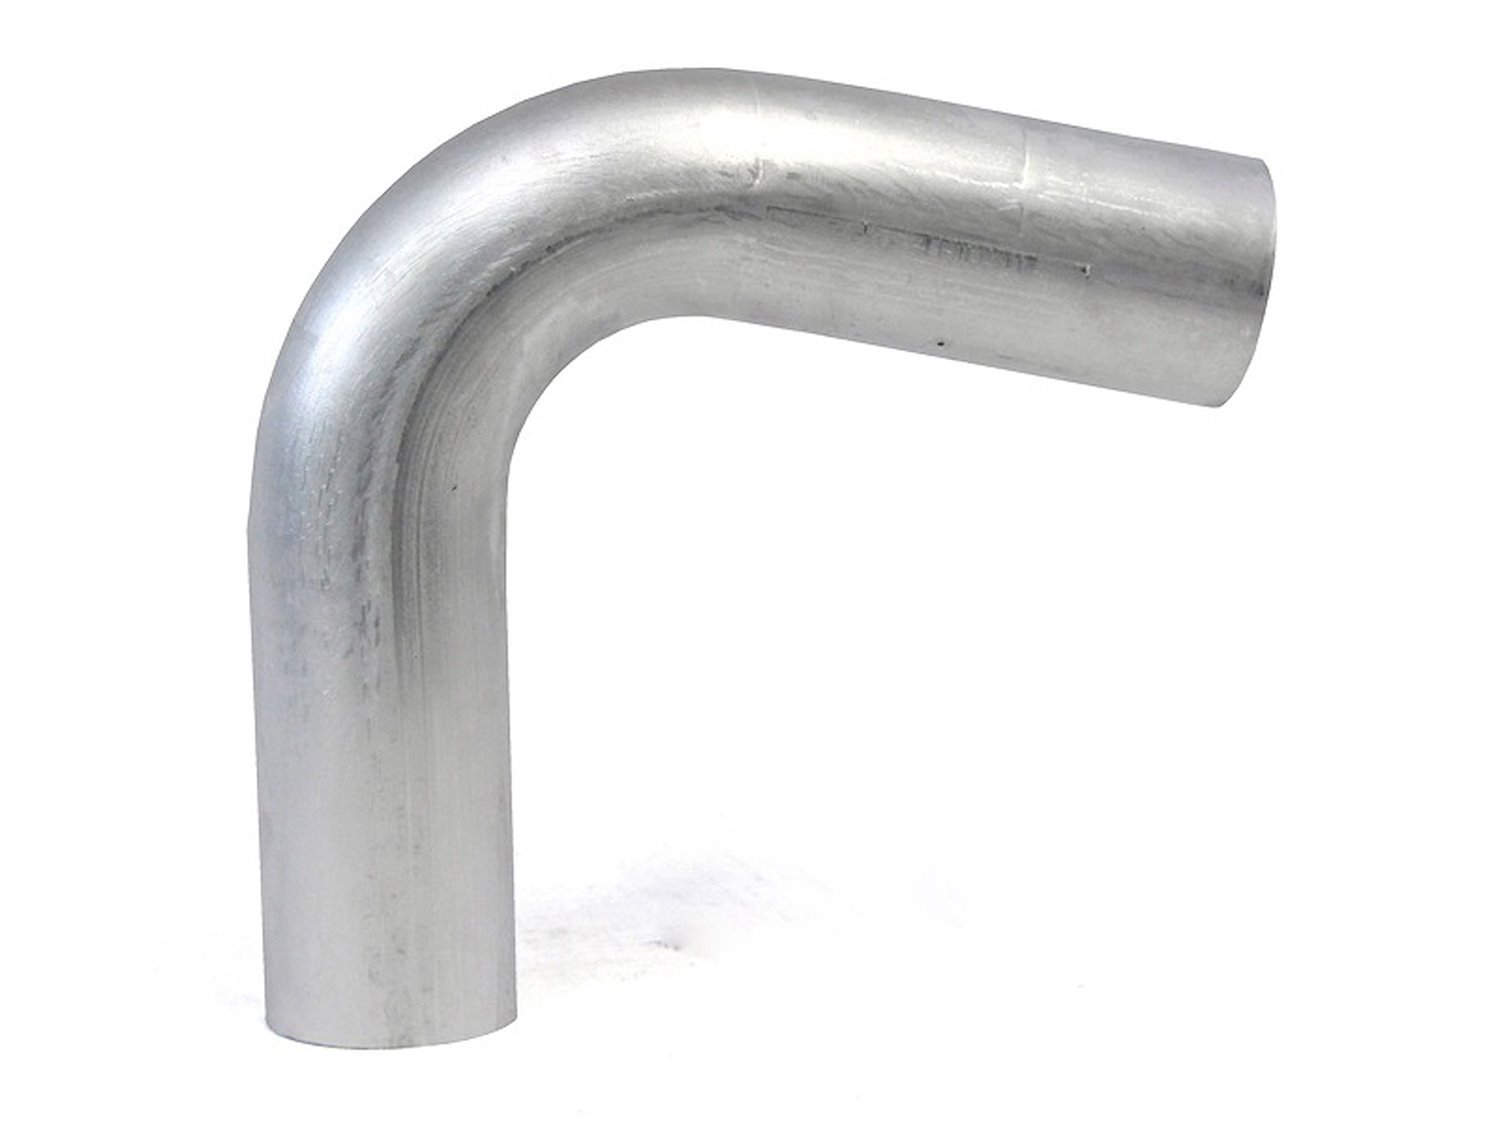 AT110-225-CLR-3 Aluminum Elbow Tube, 6061 Aluminum, 110-Degree Bend Elbow Tubing, 2-1/4 in. OD, Large Radius, 3 in. CLR